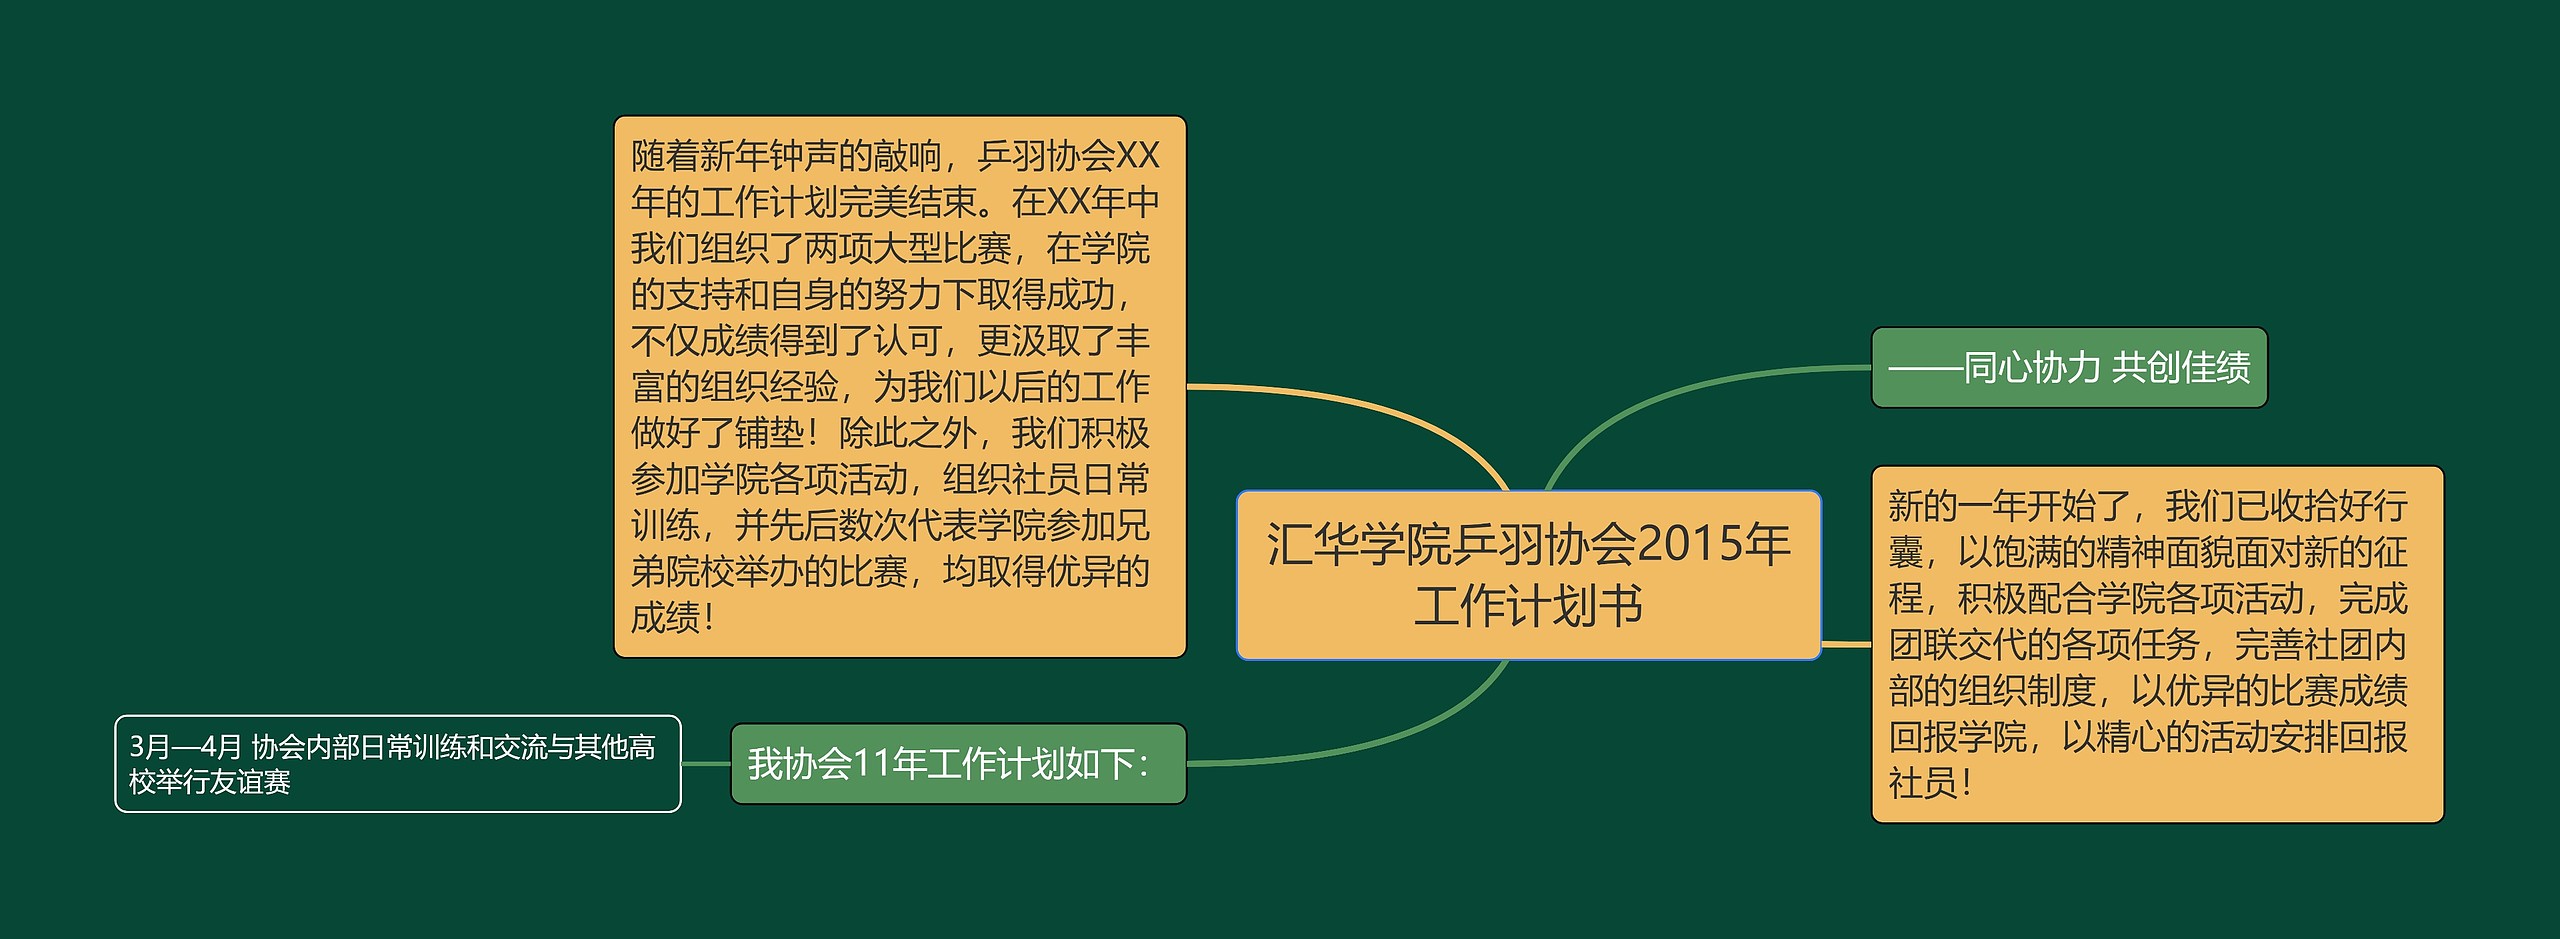 汇华学院乒羽协会2015年工作计划书